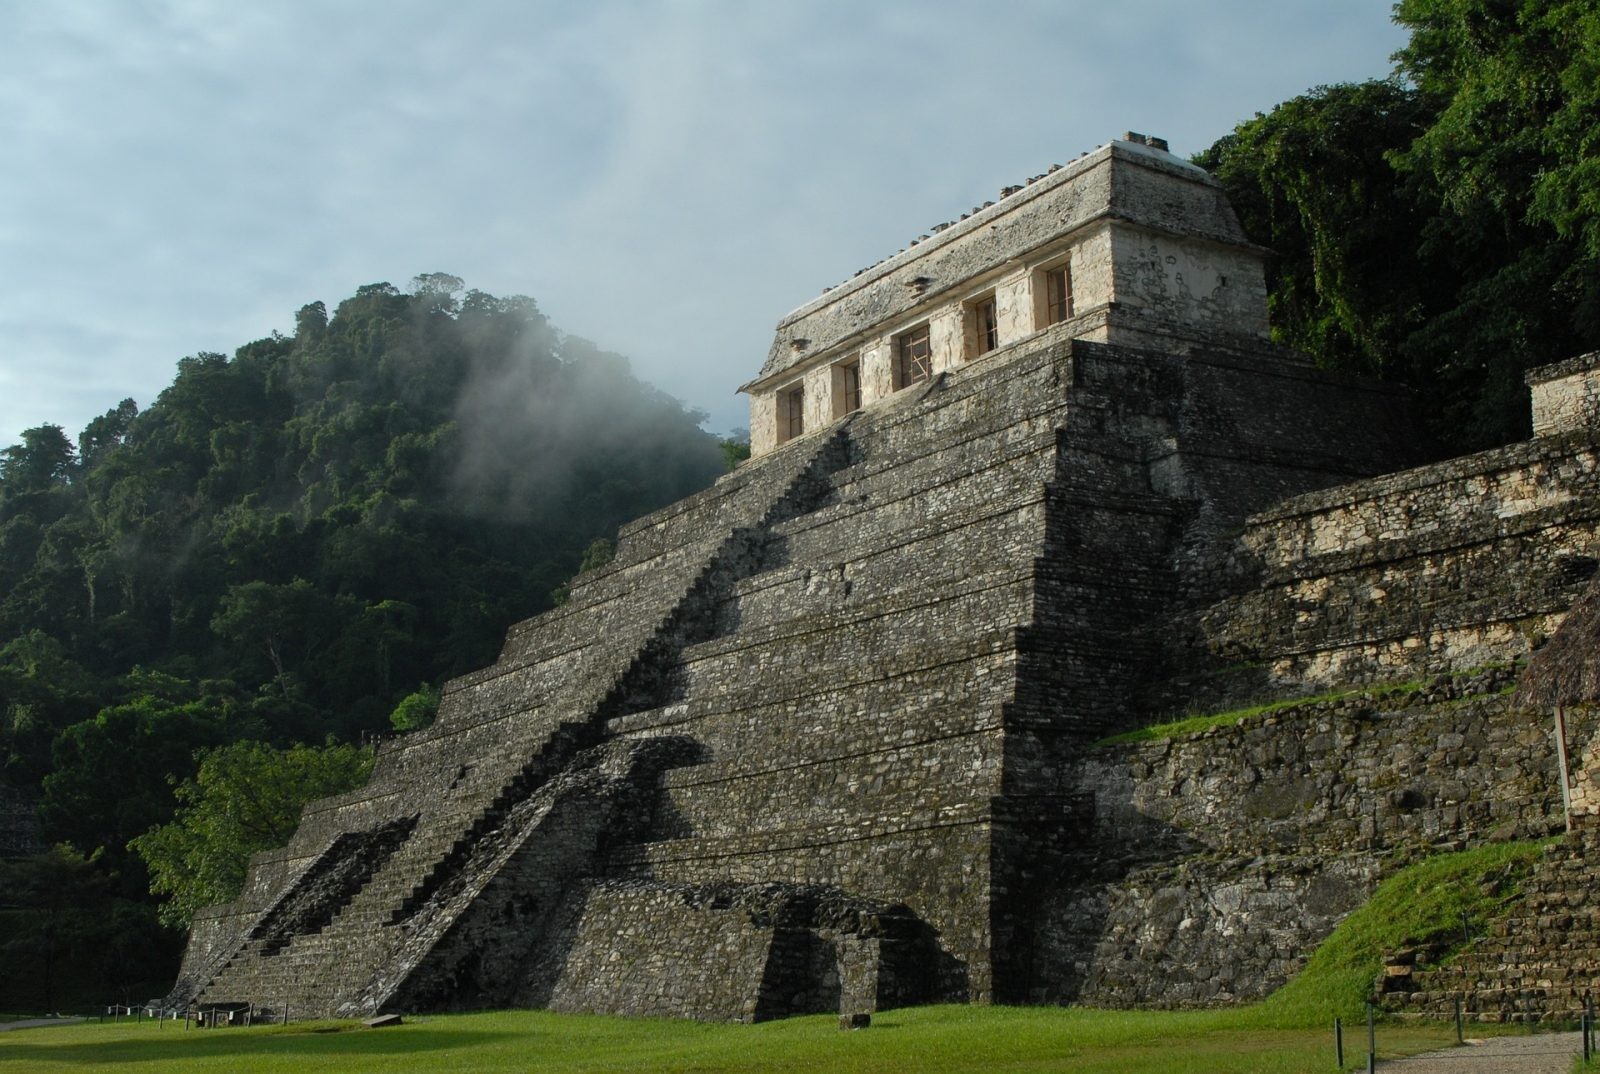 Meksyk, piramida &#8211; zdjęcie ilustracyjne /Fot. Pixabay
